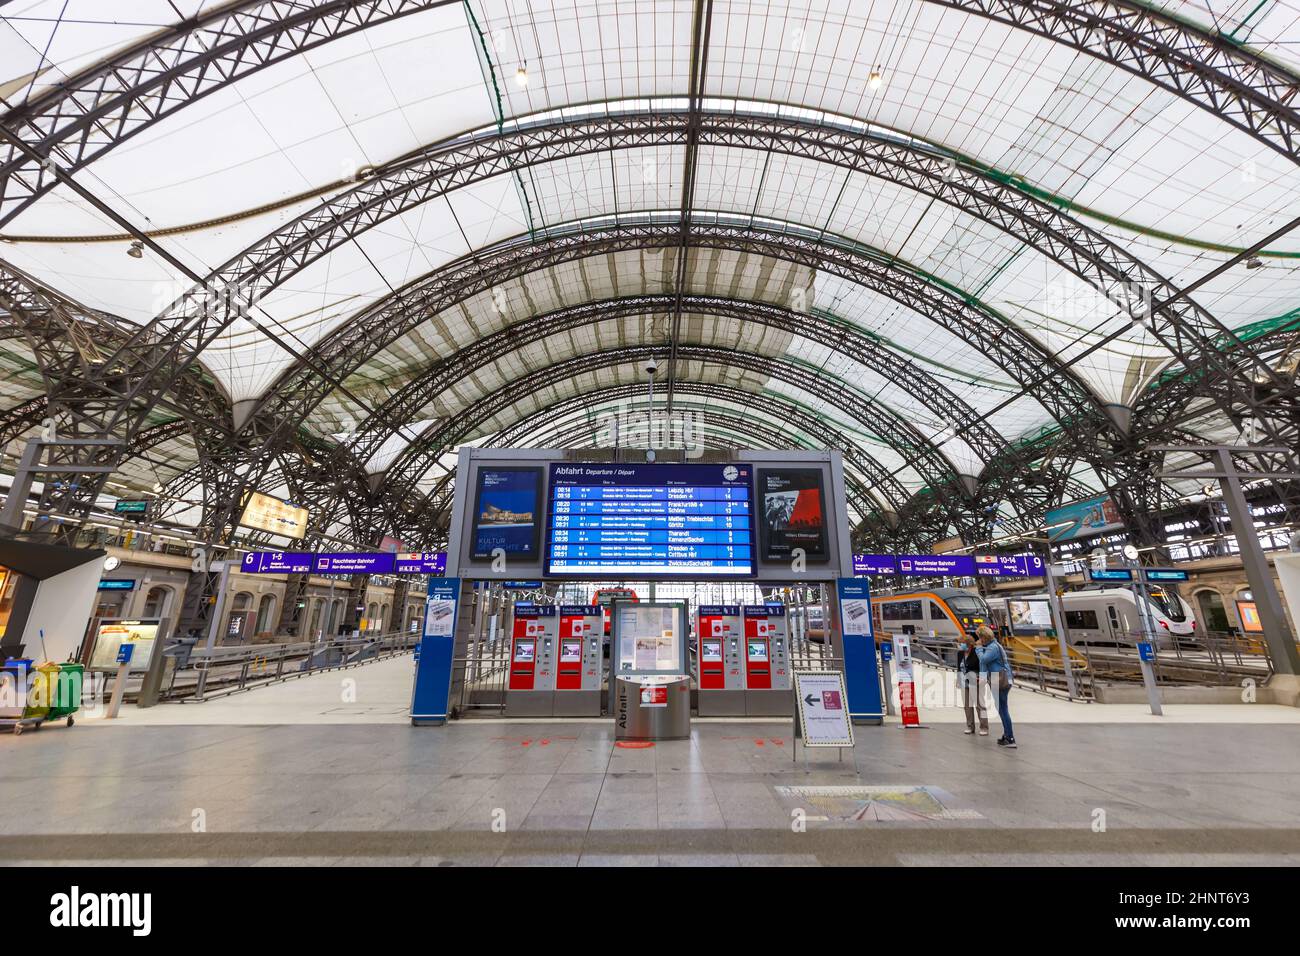 Gare principale de Dresde Hauptbahnhof Hbf en Allemagne Deutsche Bahn DB avec trains symétriques Banque D'Images